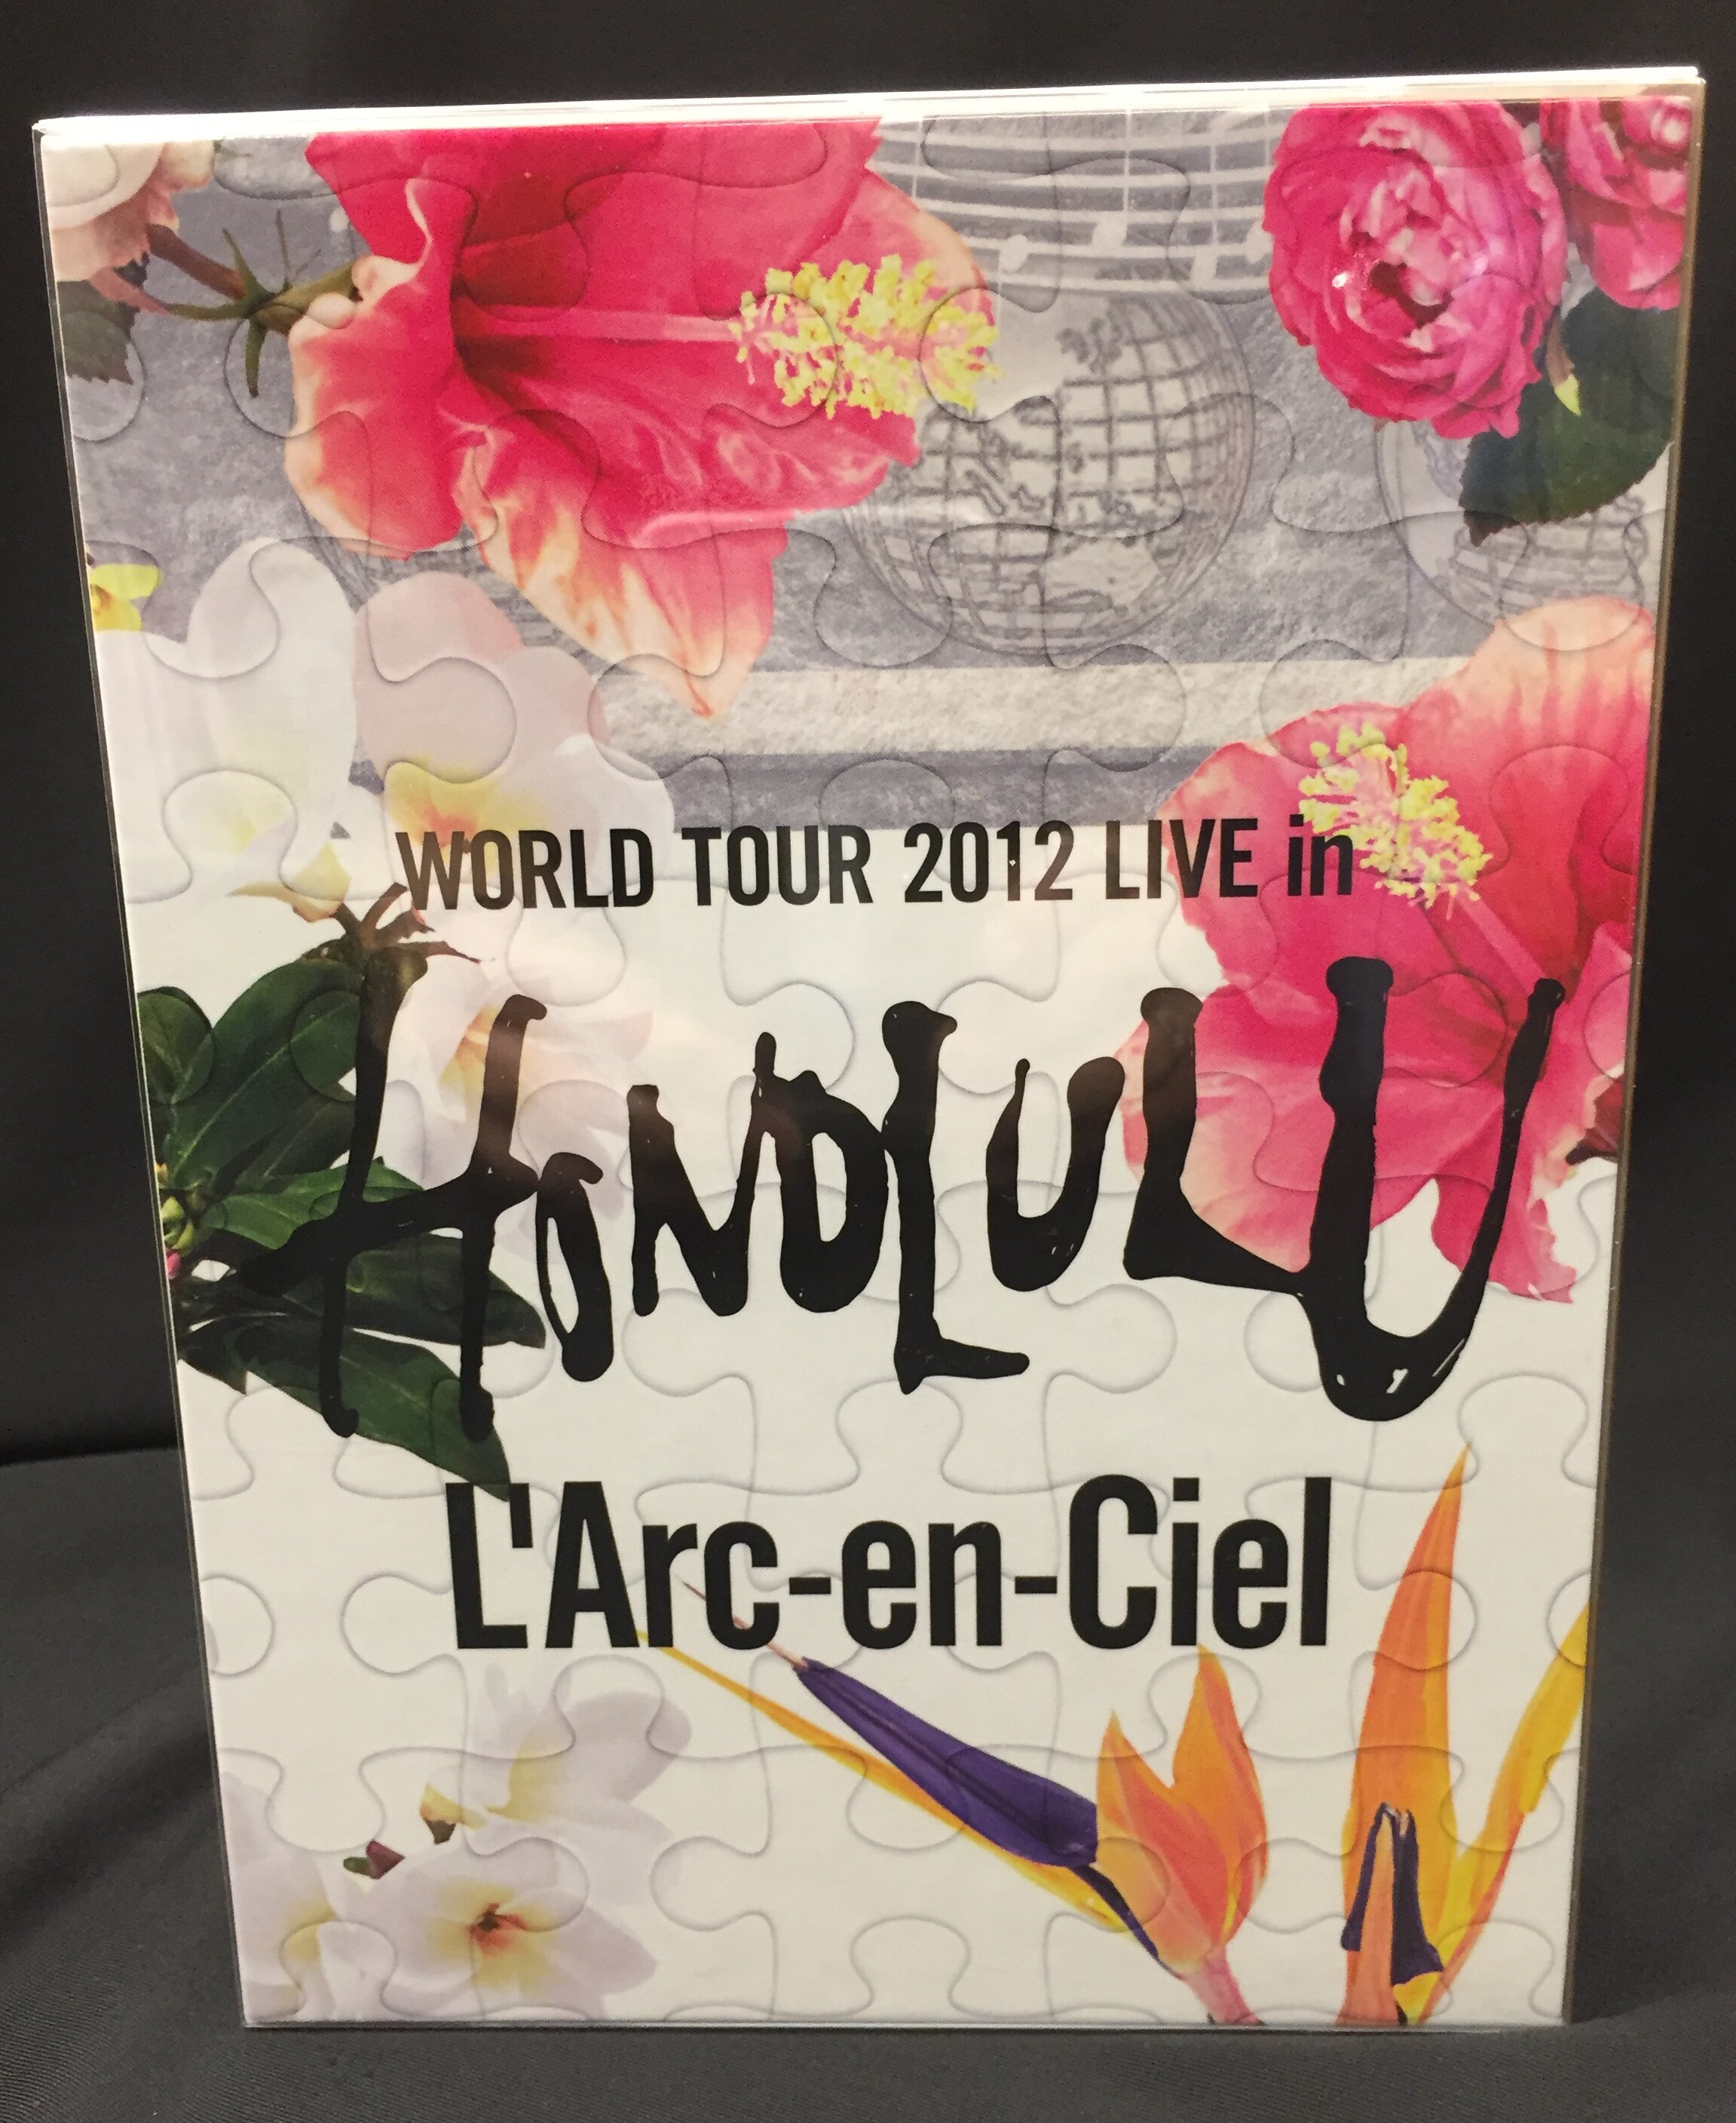 L'Arc-en-Ciel 初回生産限定盤(2DVD+2CD/WORLD TOUR 2012 LIVE in